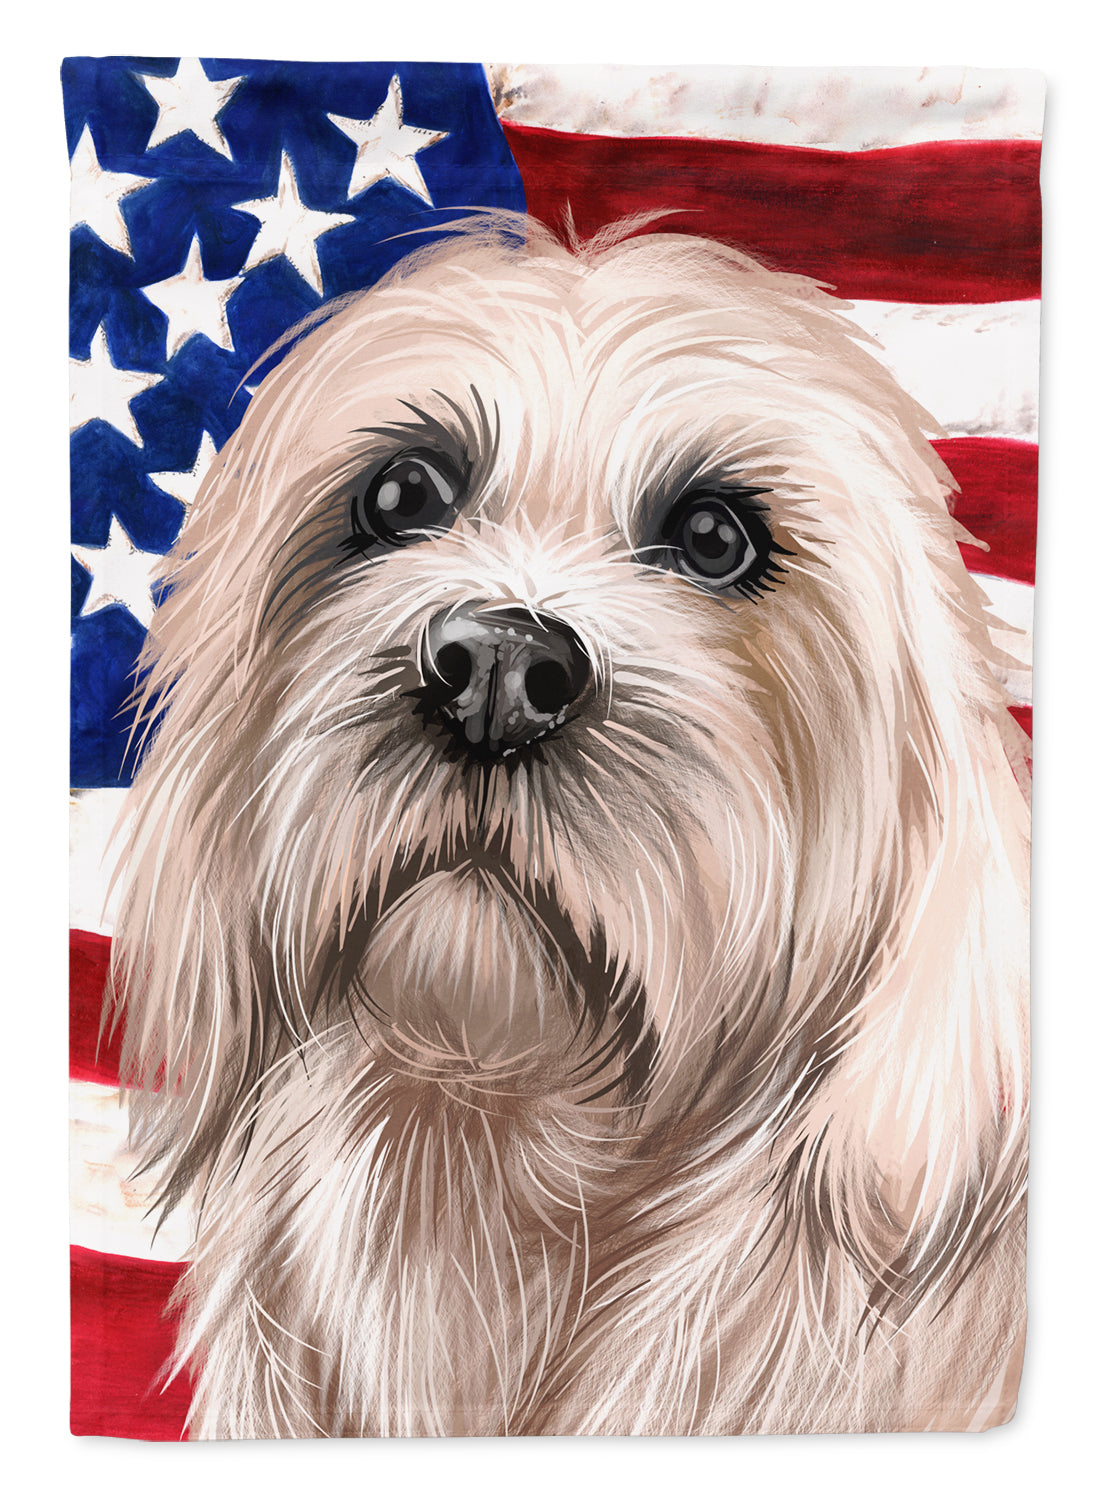 Dandie Dinmont Terrier American Flag Flag Garden Size CK6501GF